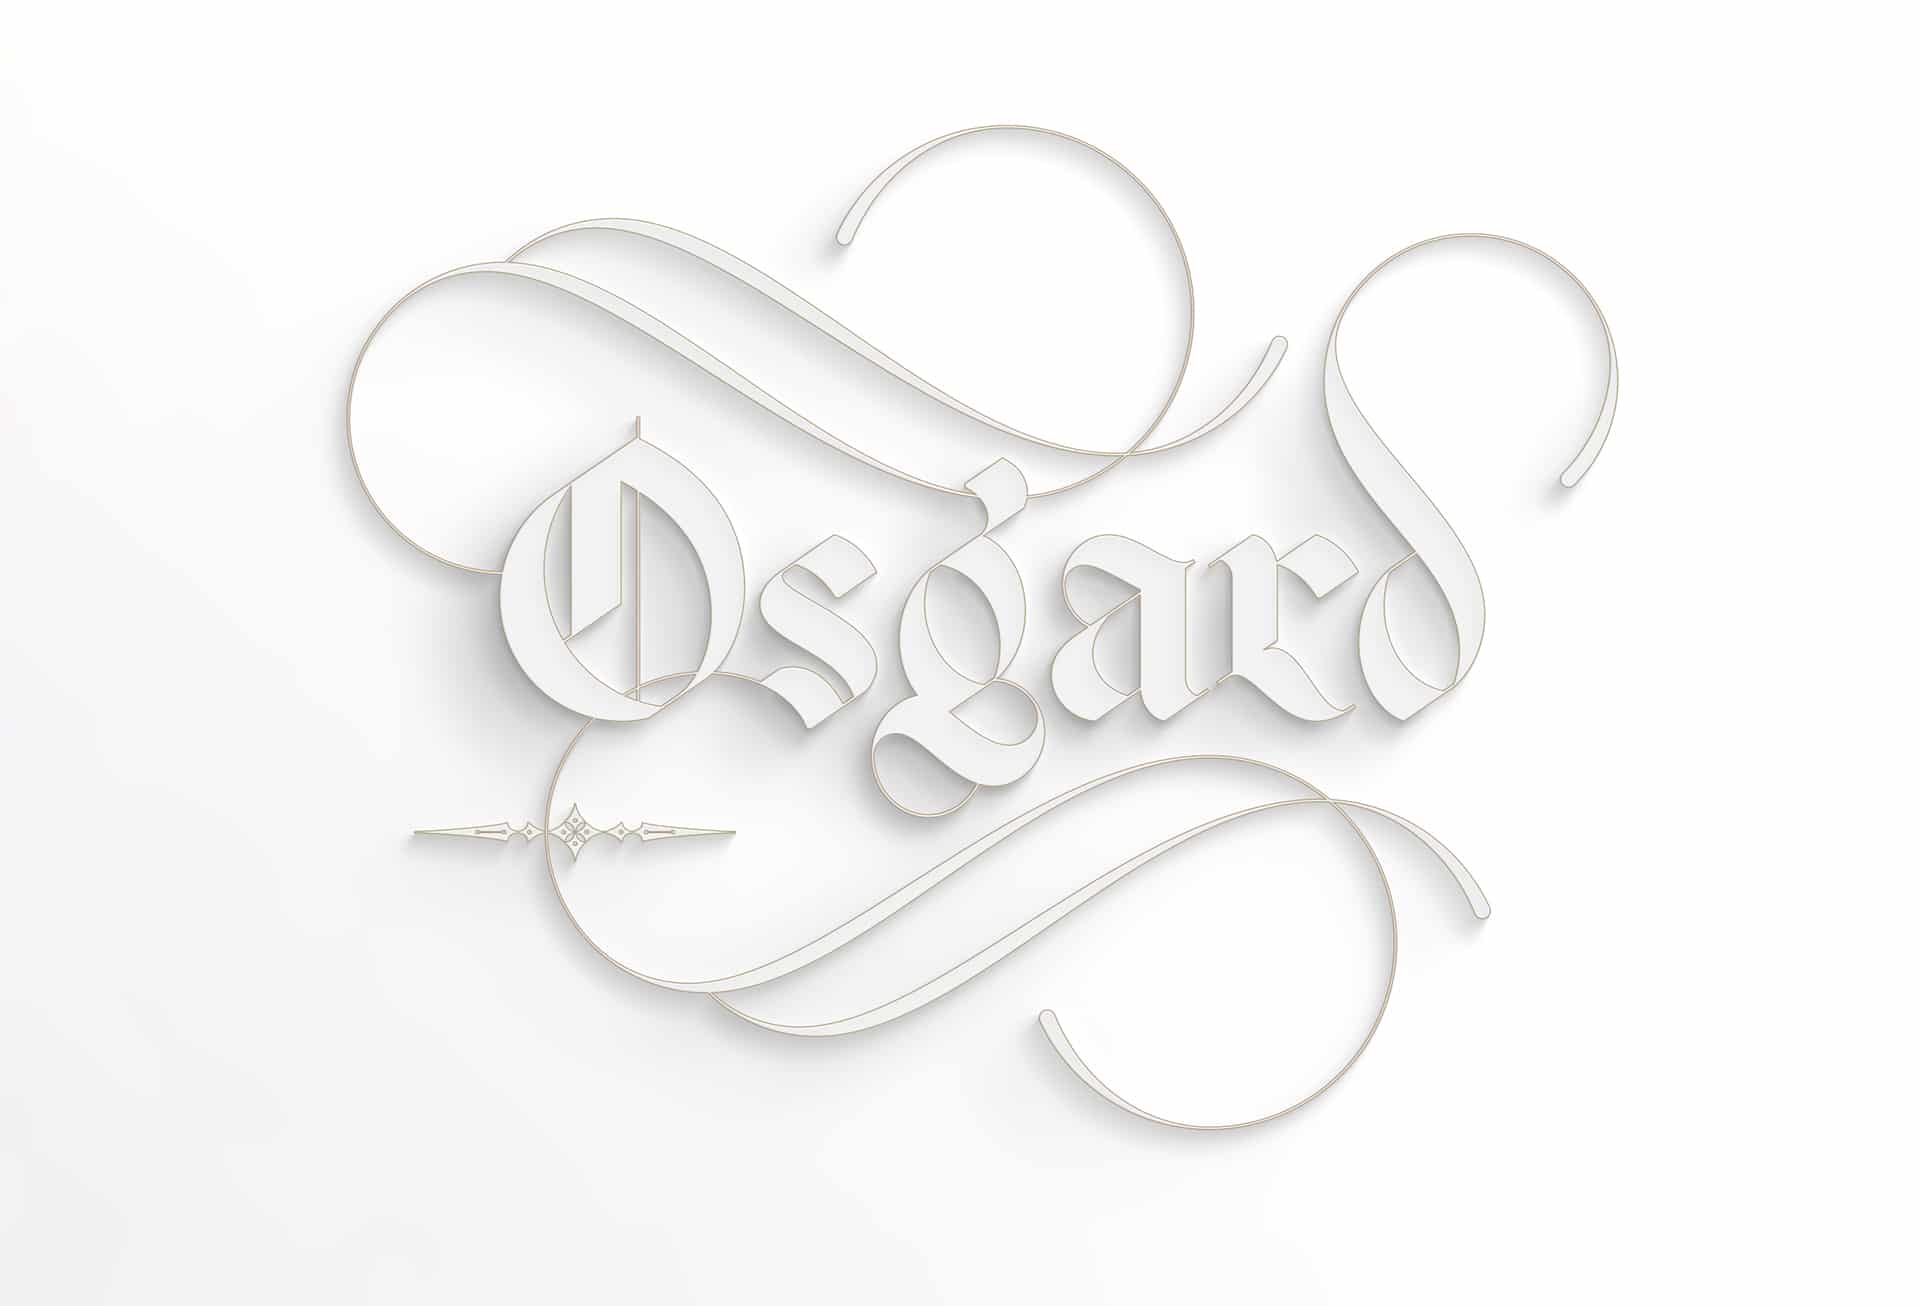 关于设计会议大学免费字体星期五Osgard的注释